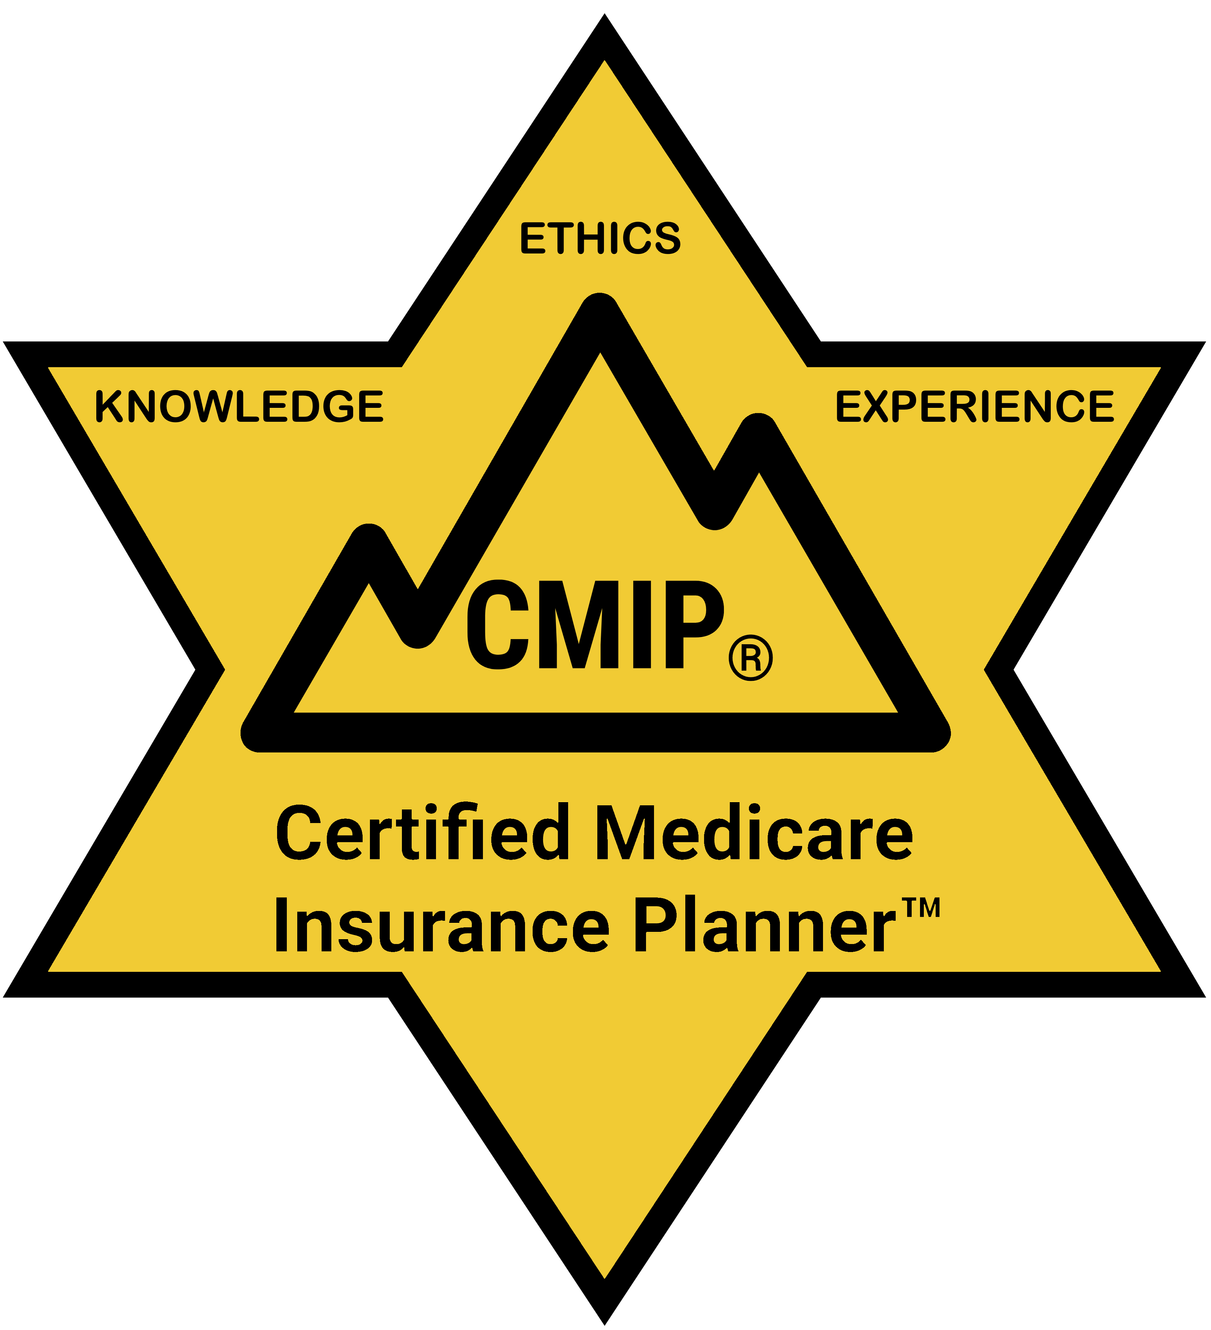 www.certifiedmedicareinsuranceplanner.org